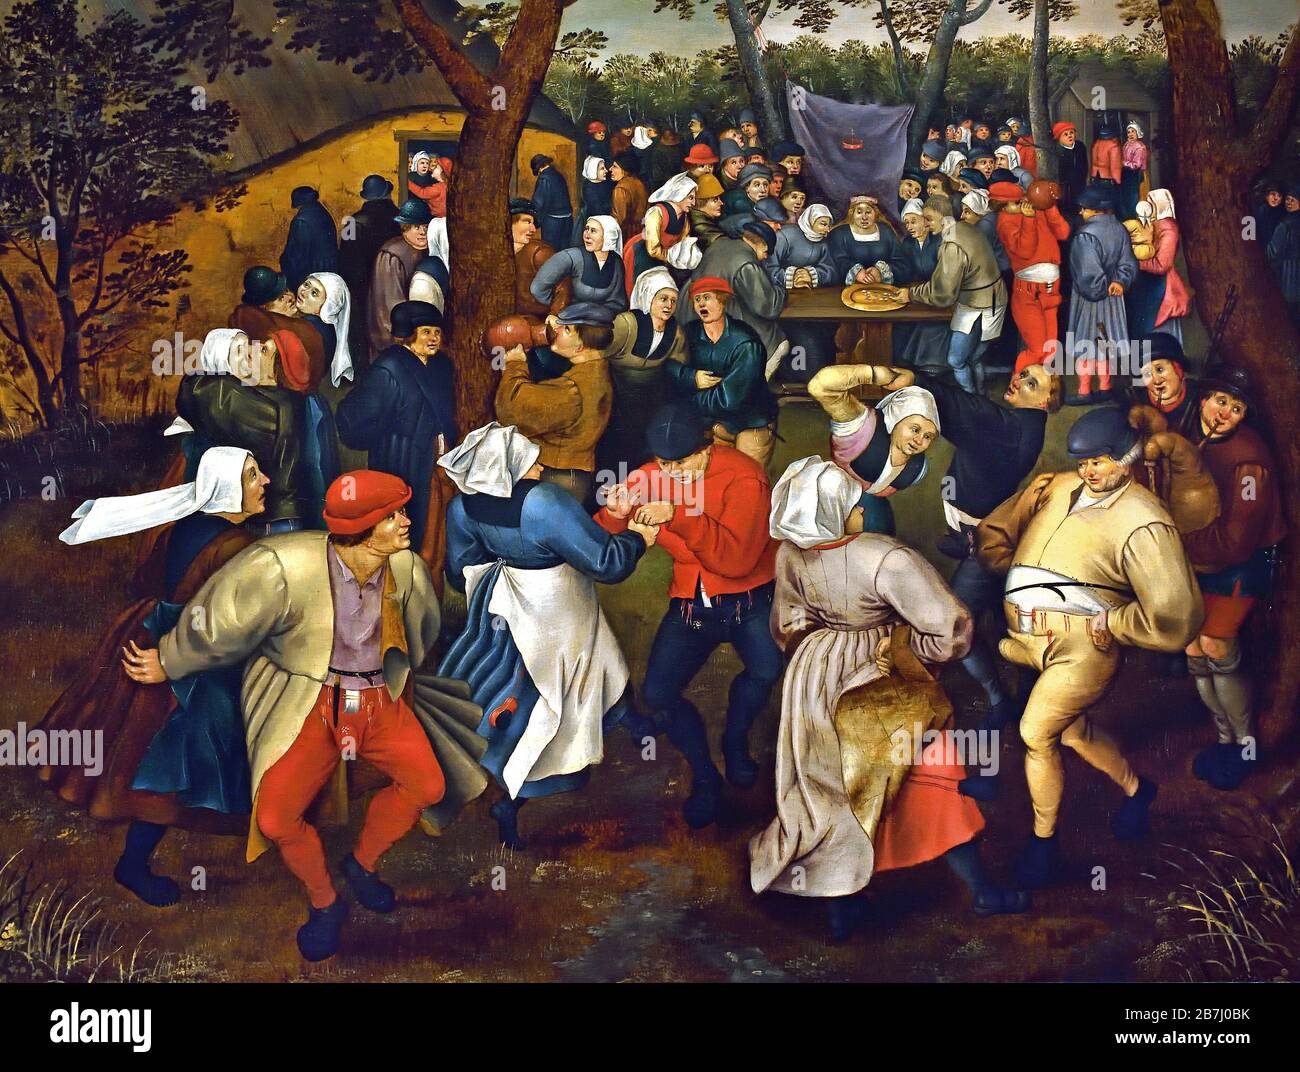 La danse de mariage en plein air par Pieter Brueghel le Jeune 1564-1637, la famille Brueghel ( Bruegel ou Breughel ), peintres flamands du XVIe au XVIIe siècle, belge, Belgique. Banque D'Images